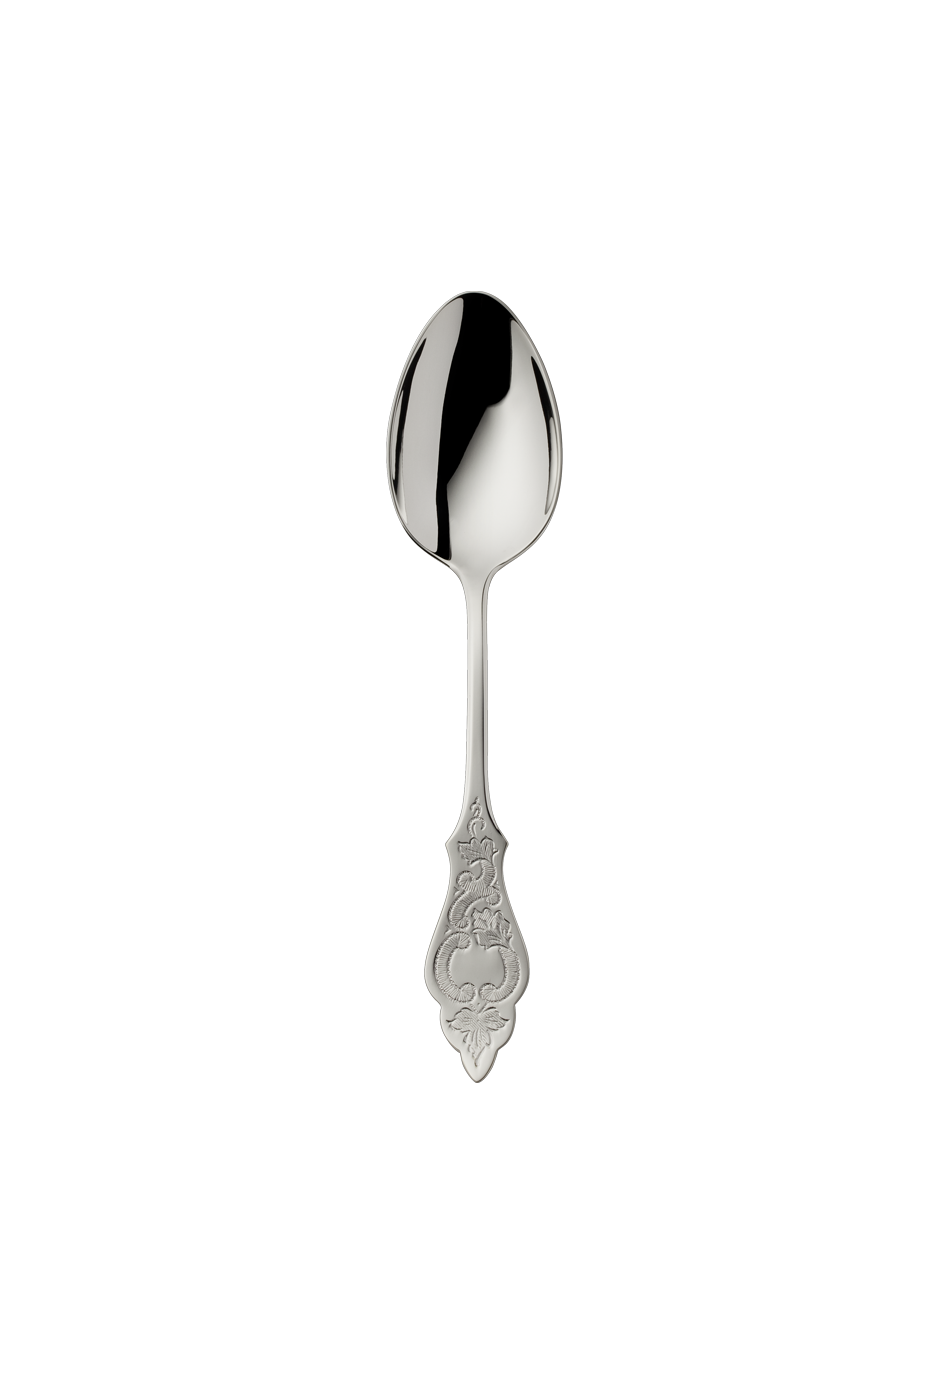 Ostfriesen Children's Spoon (18/8 stainless steel)